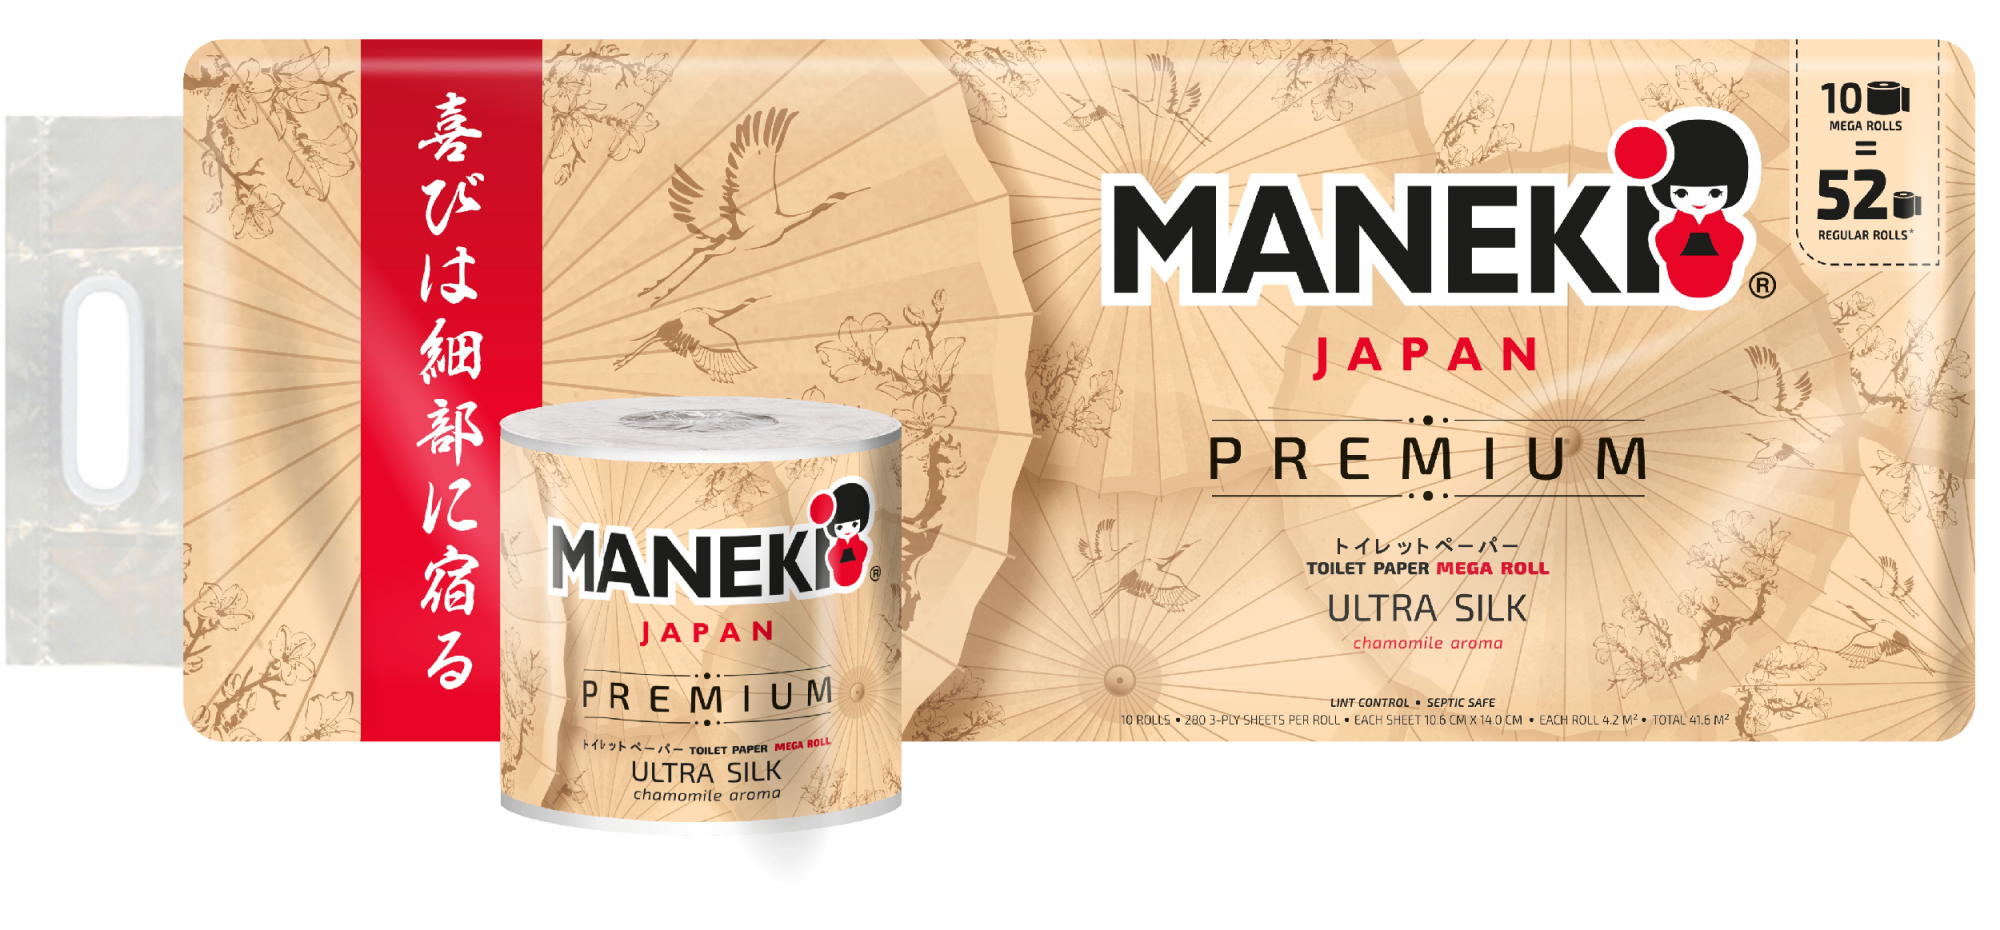 Maneki Kabi Premium Туалетная бумага трехслойная перфорированная с ароматом ромашки 10 рулонов